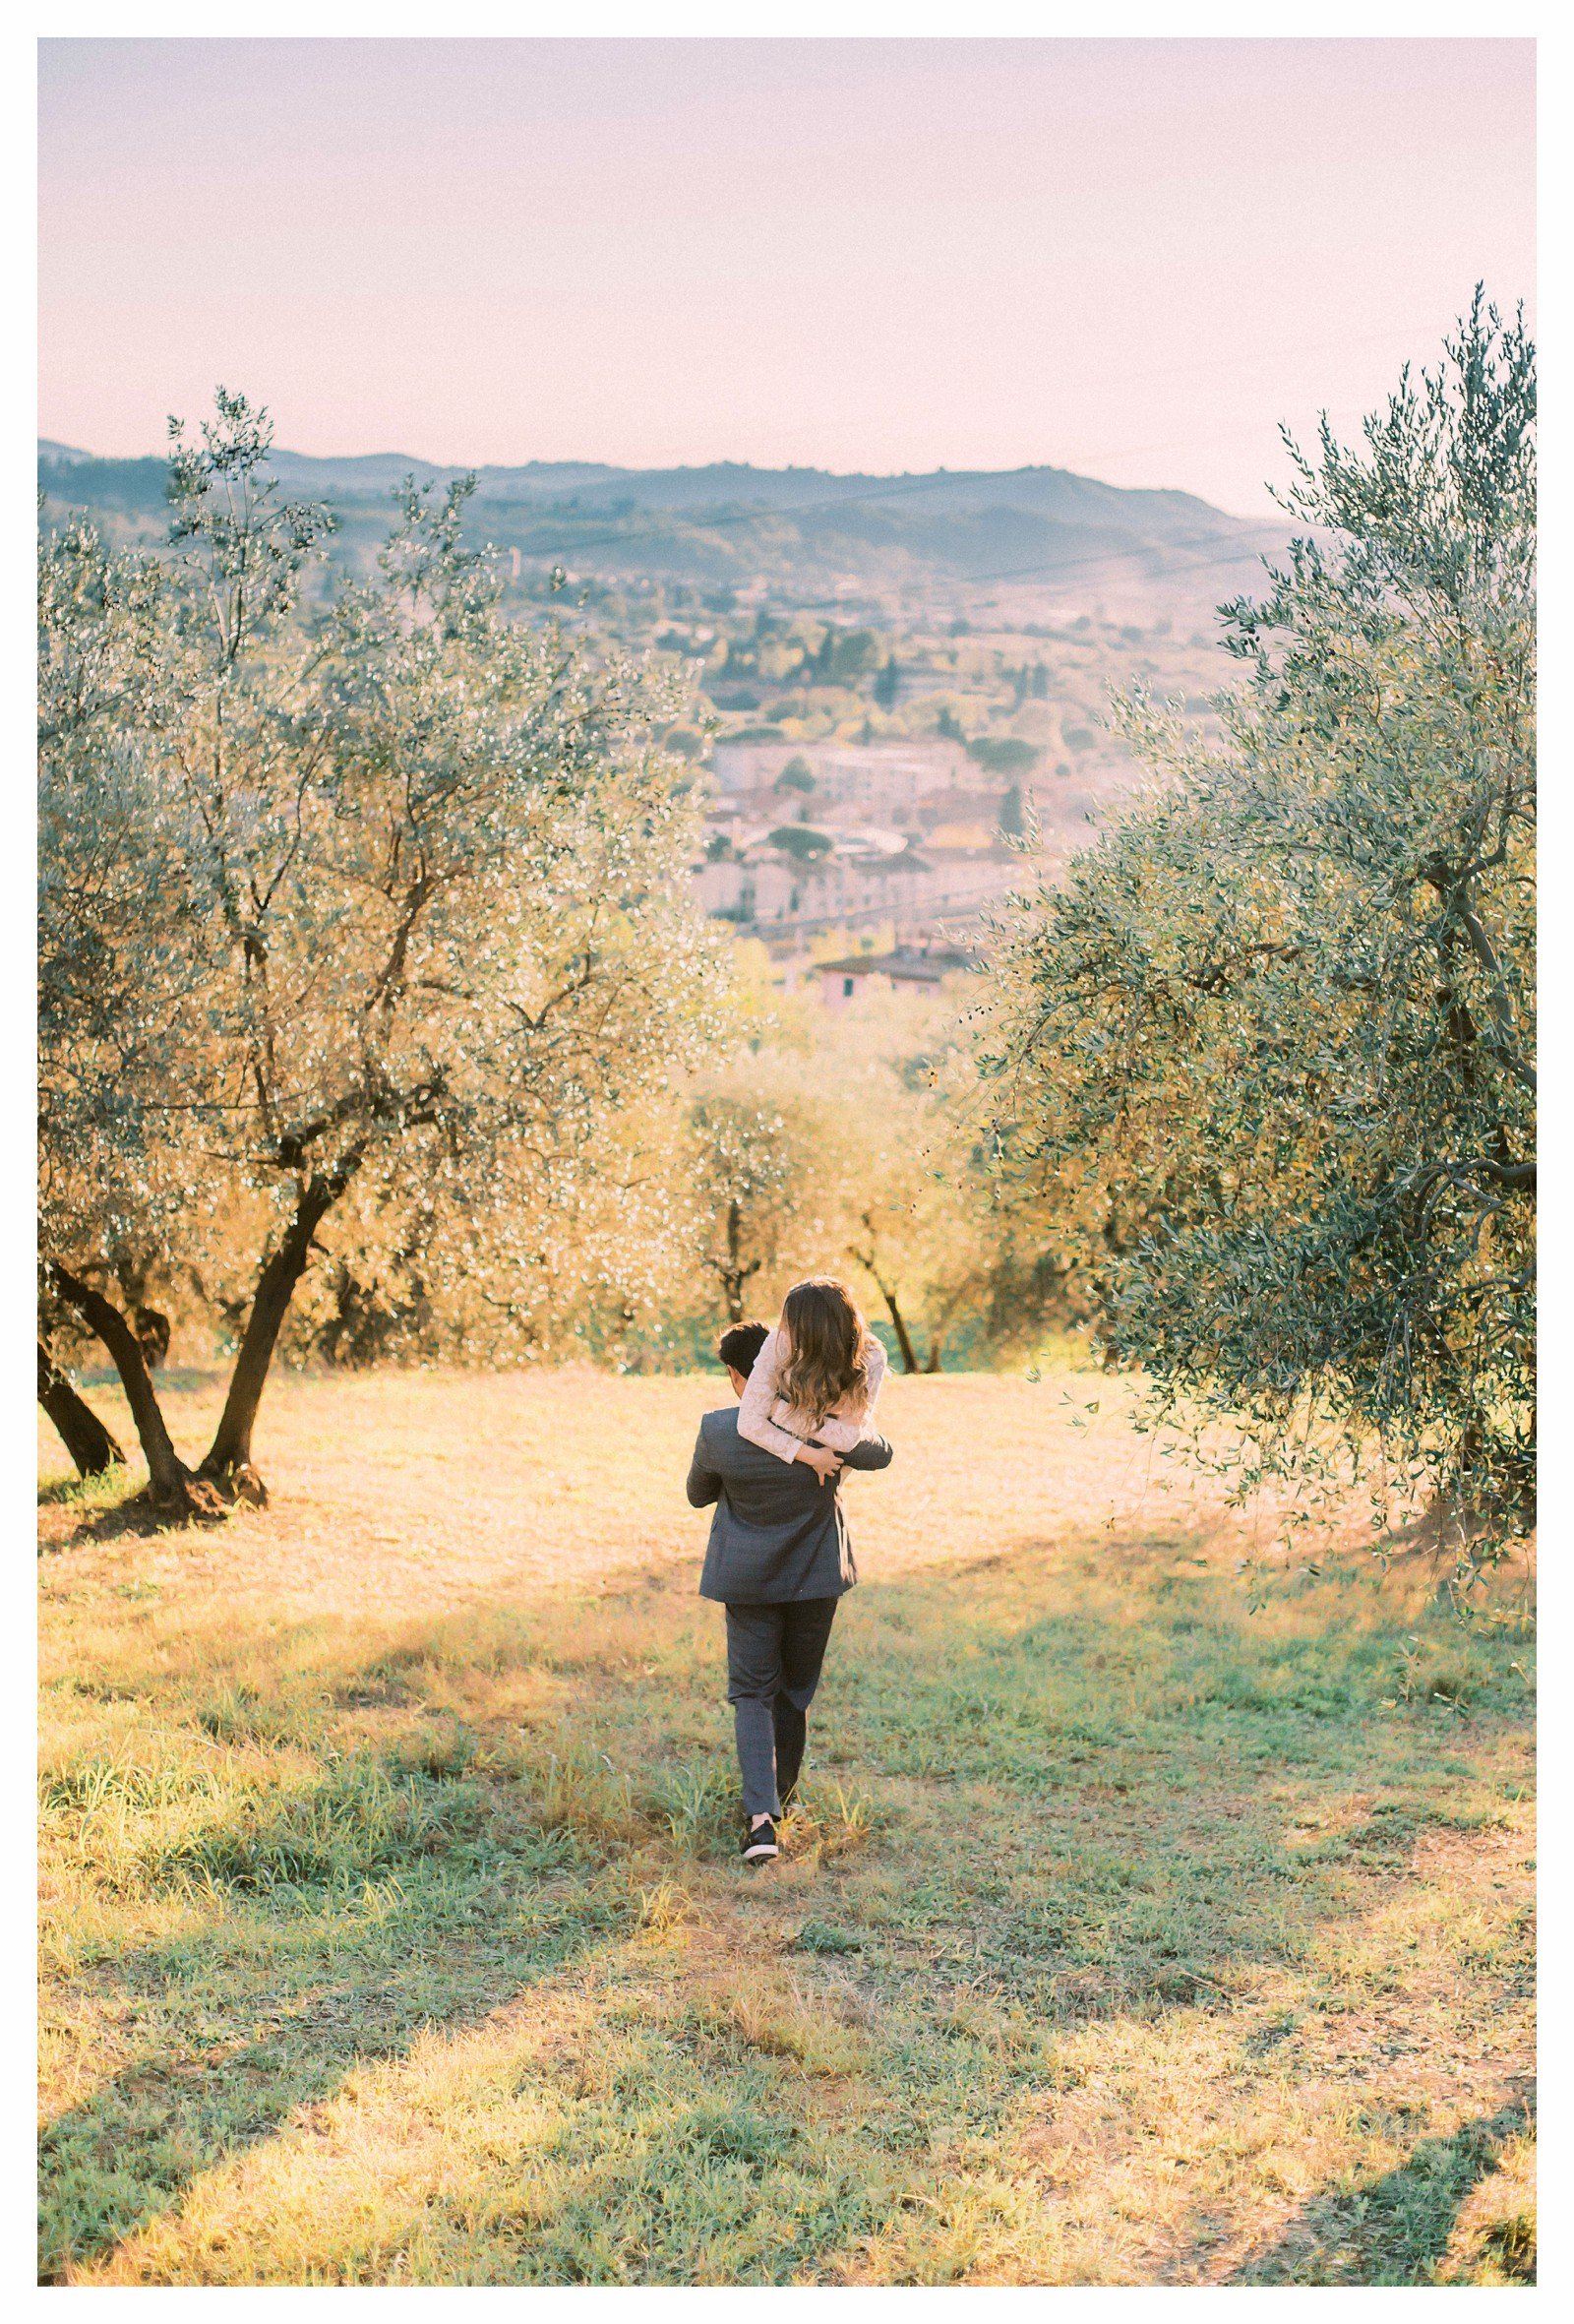 tuscany-countryside-val-dorcia-wedding-couple-photoshoot-photographer_0029.jpg